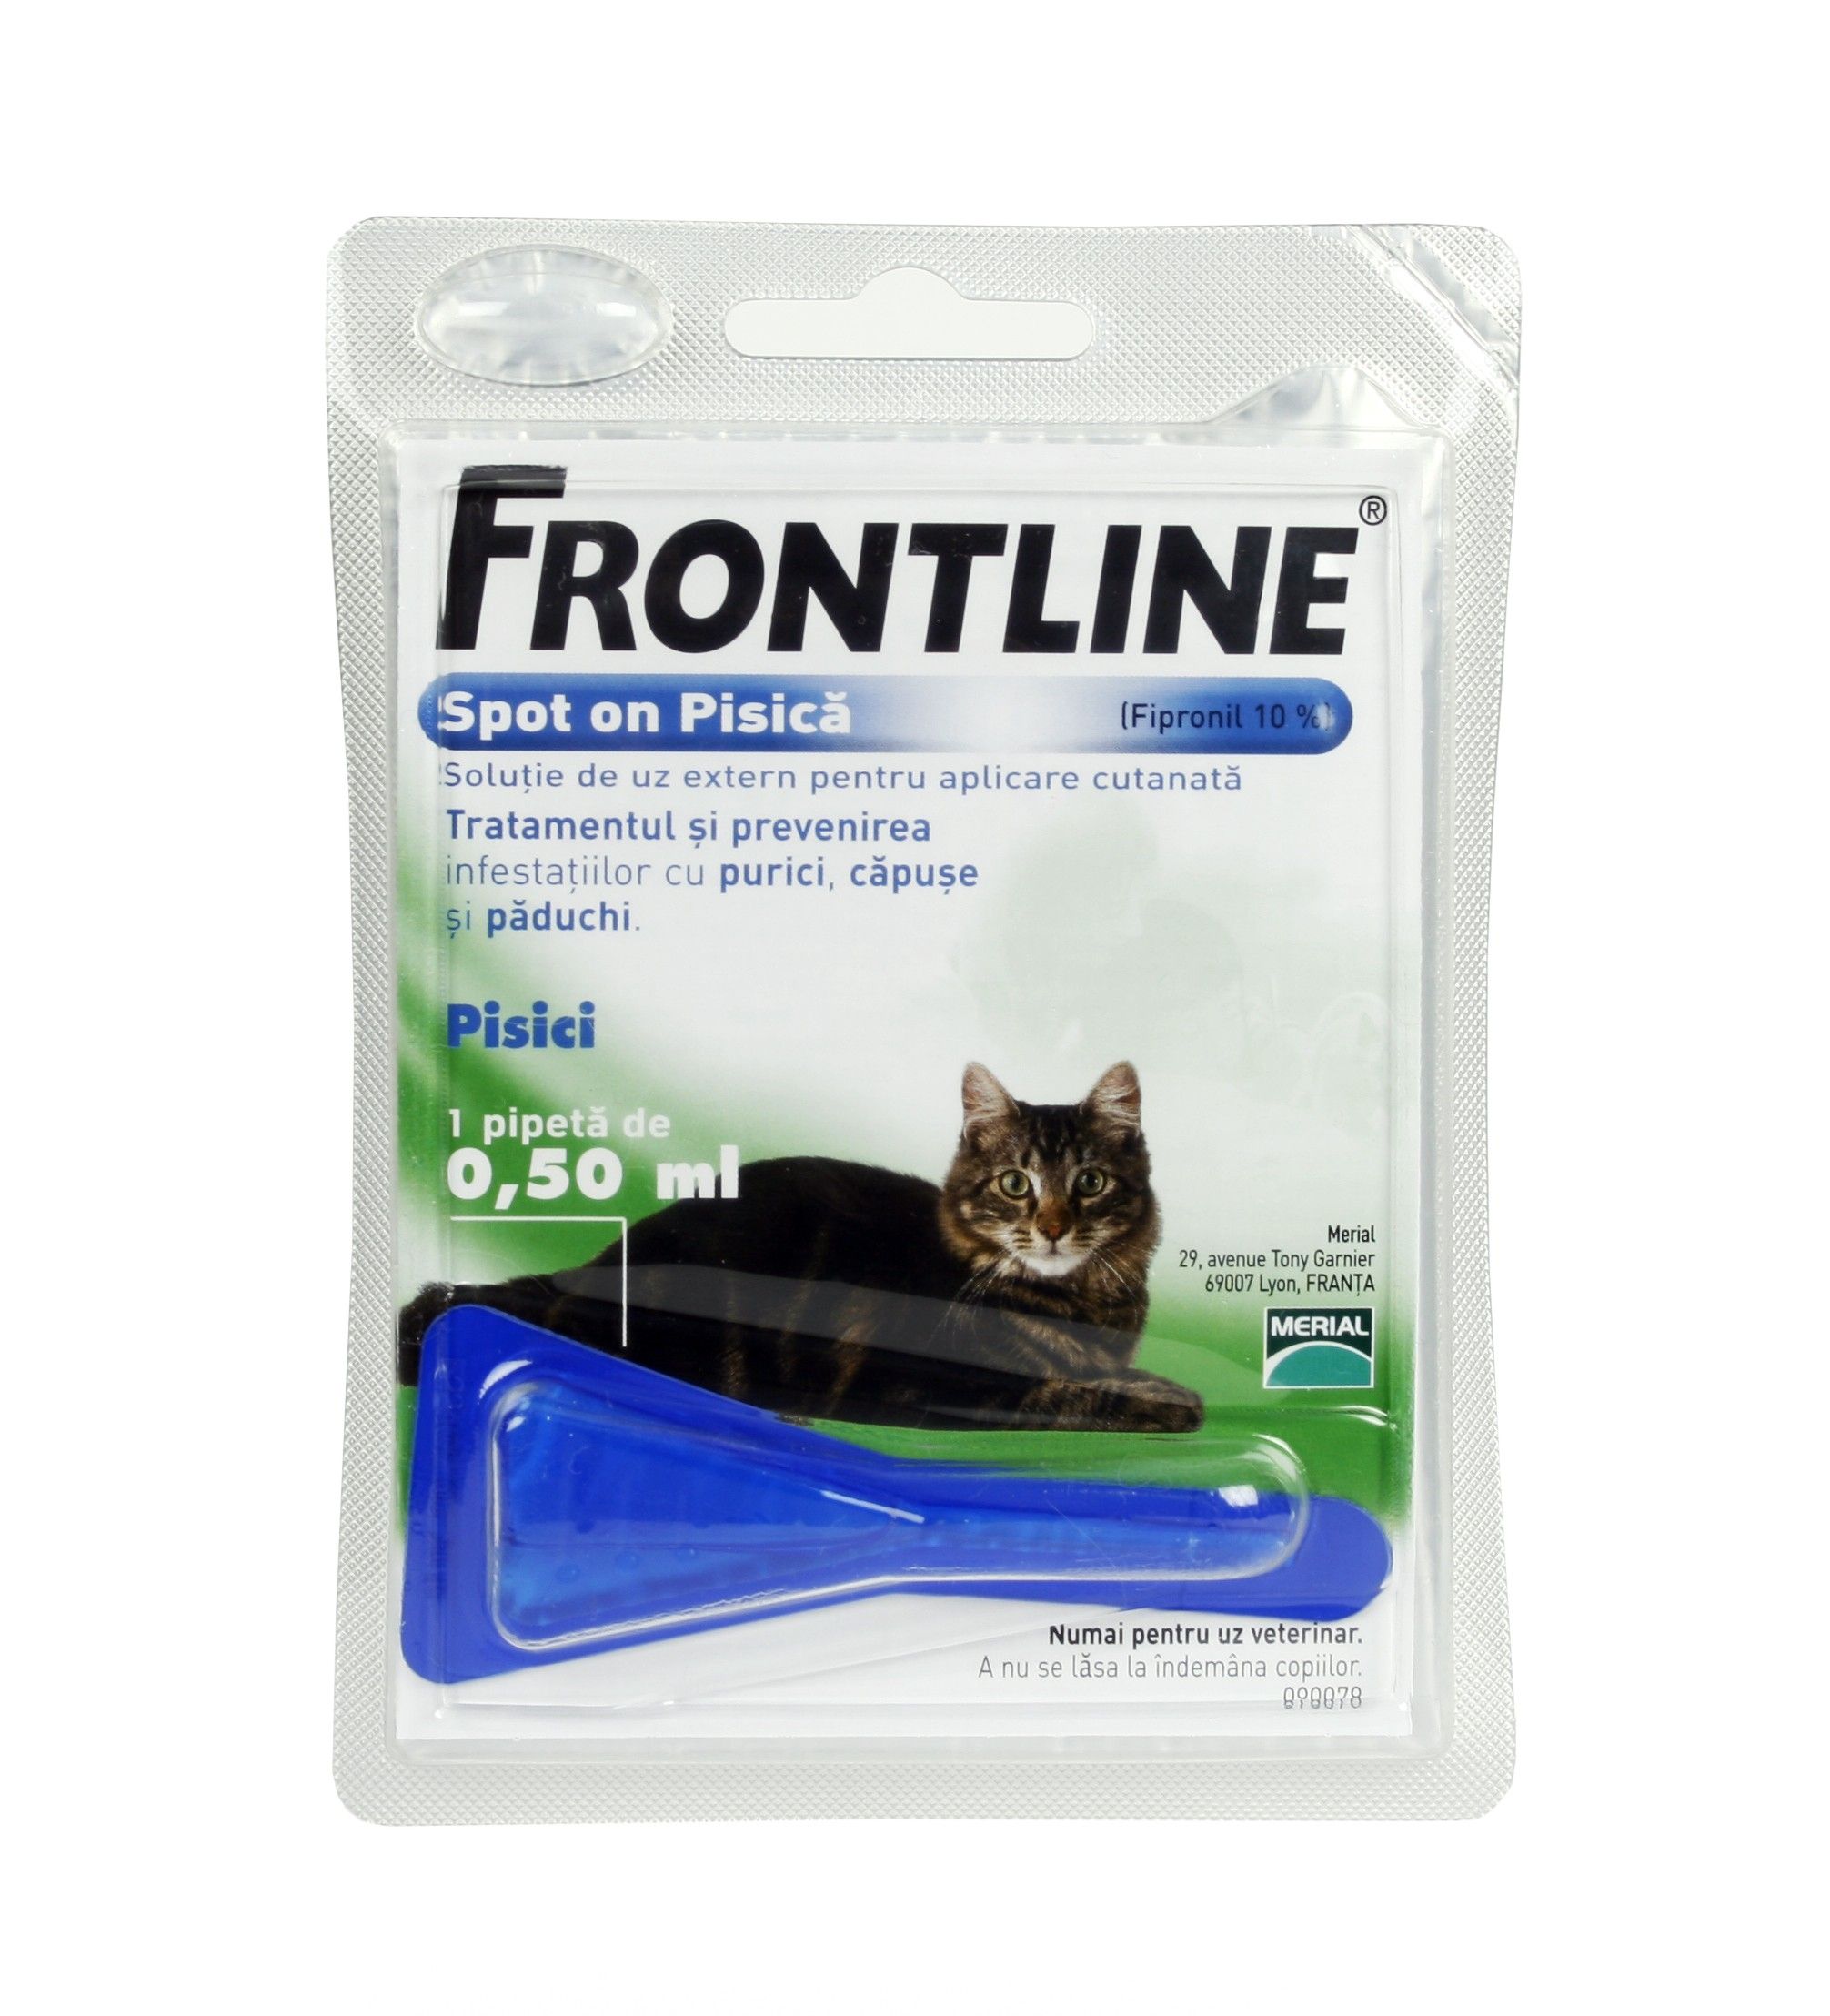 Frontline Spot On Pisica – 1 Pipeta Antiparazitara Antiparazitara